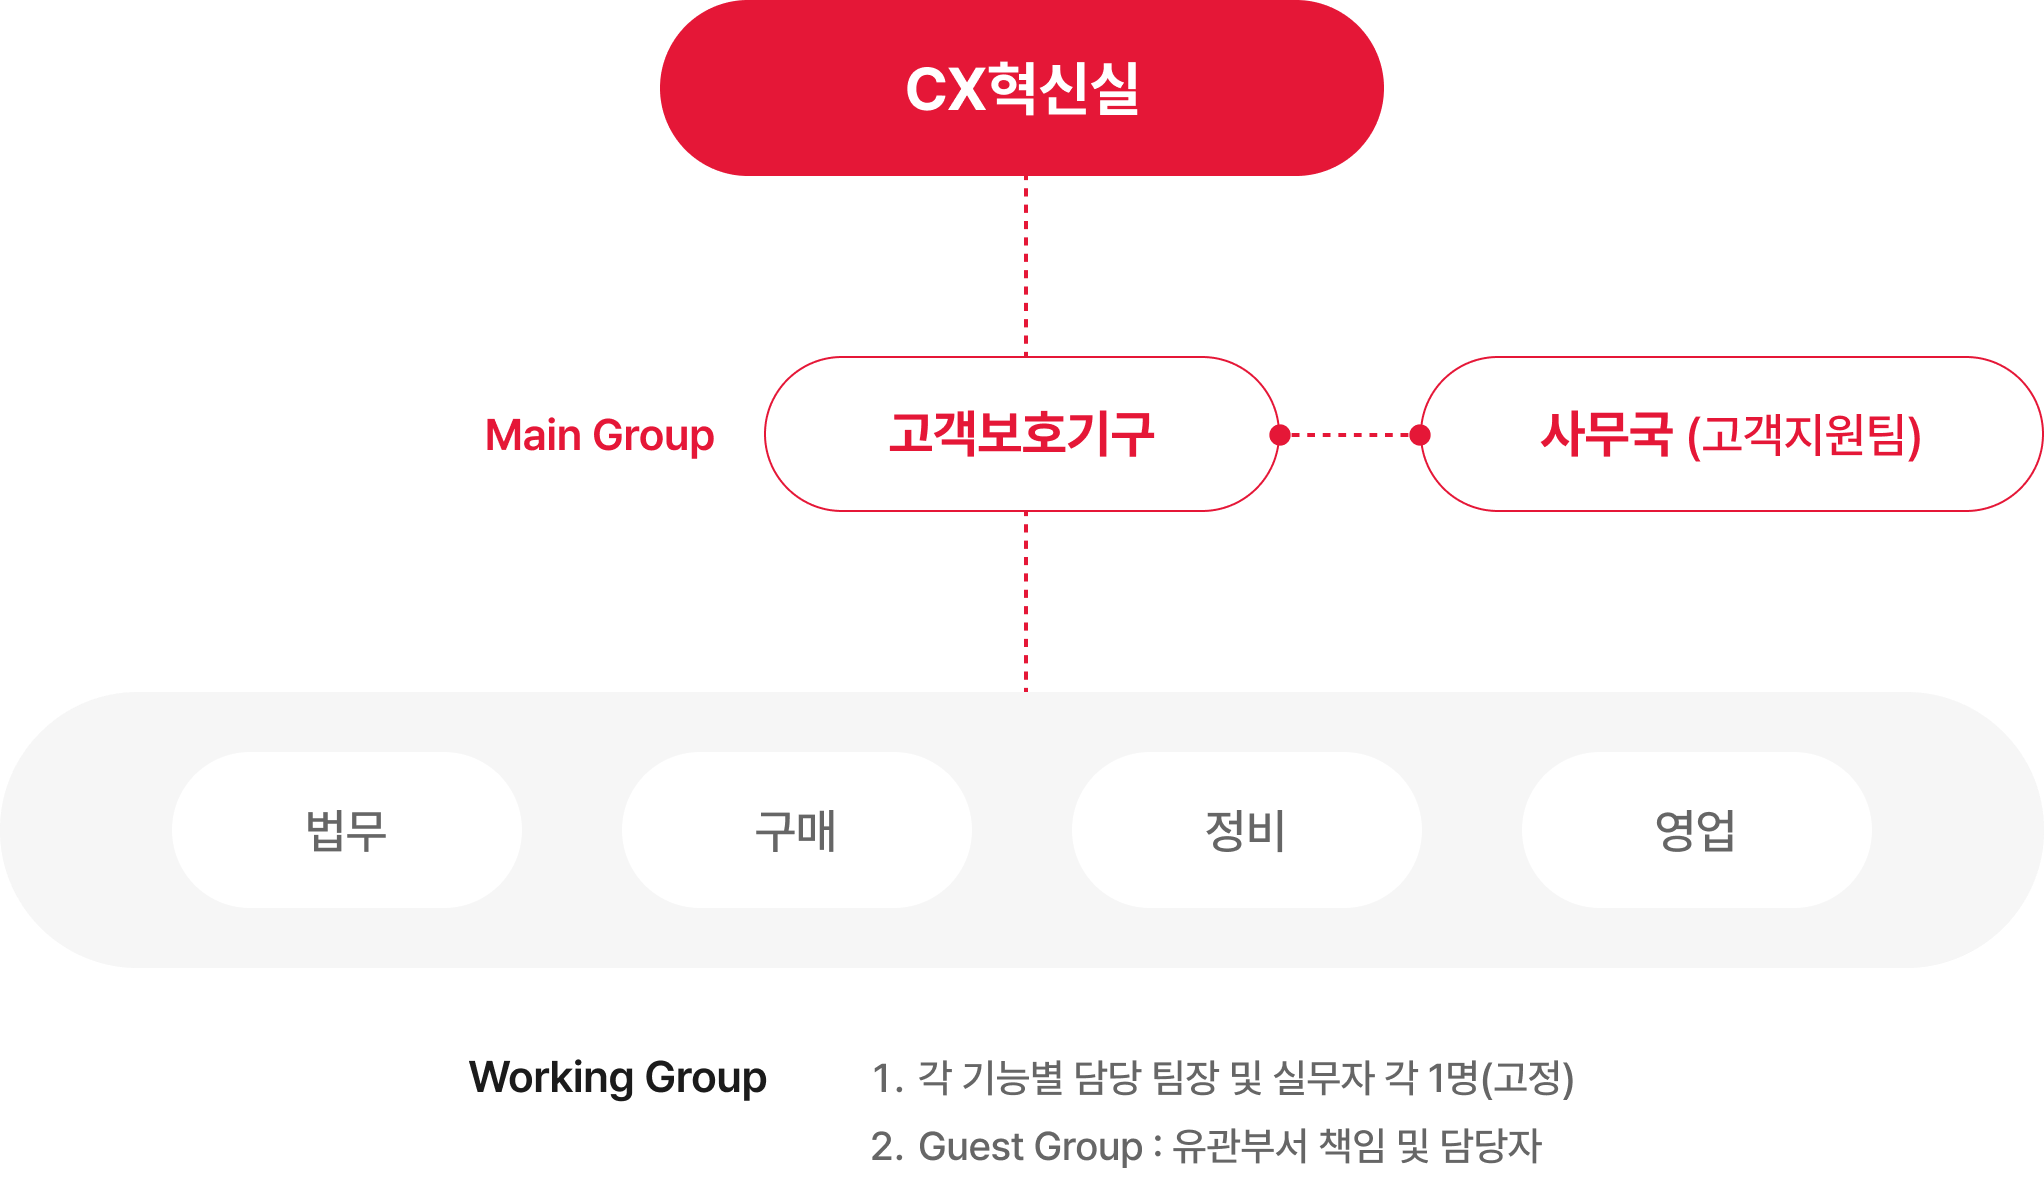 CX혁신실 하위의 고객보호기구를 중심으로 각 기능별 담당자와 실무자를 설명하는 다이어그램(아래 참조)